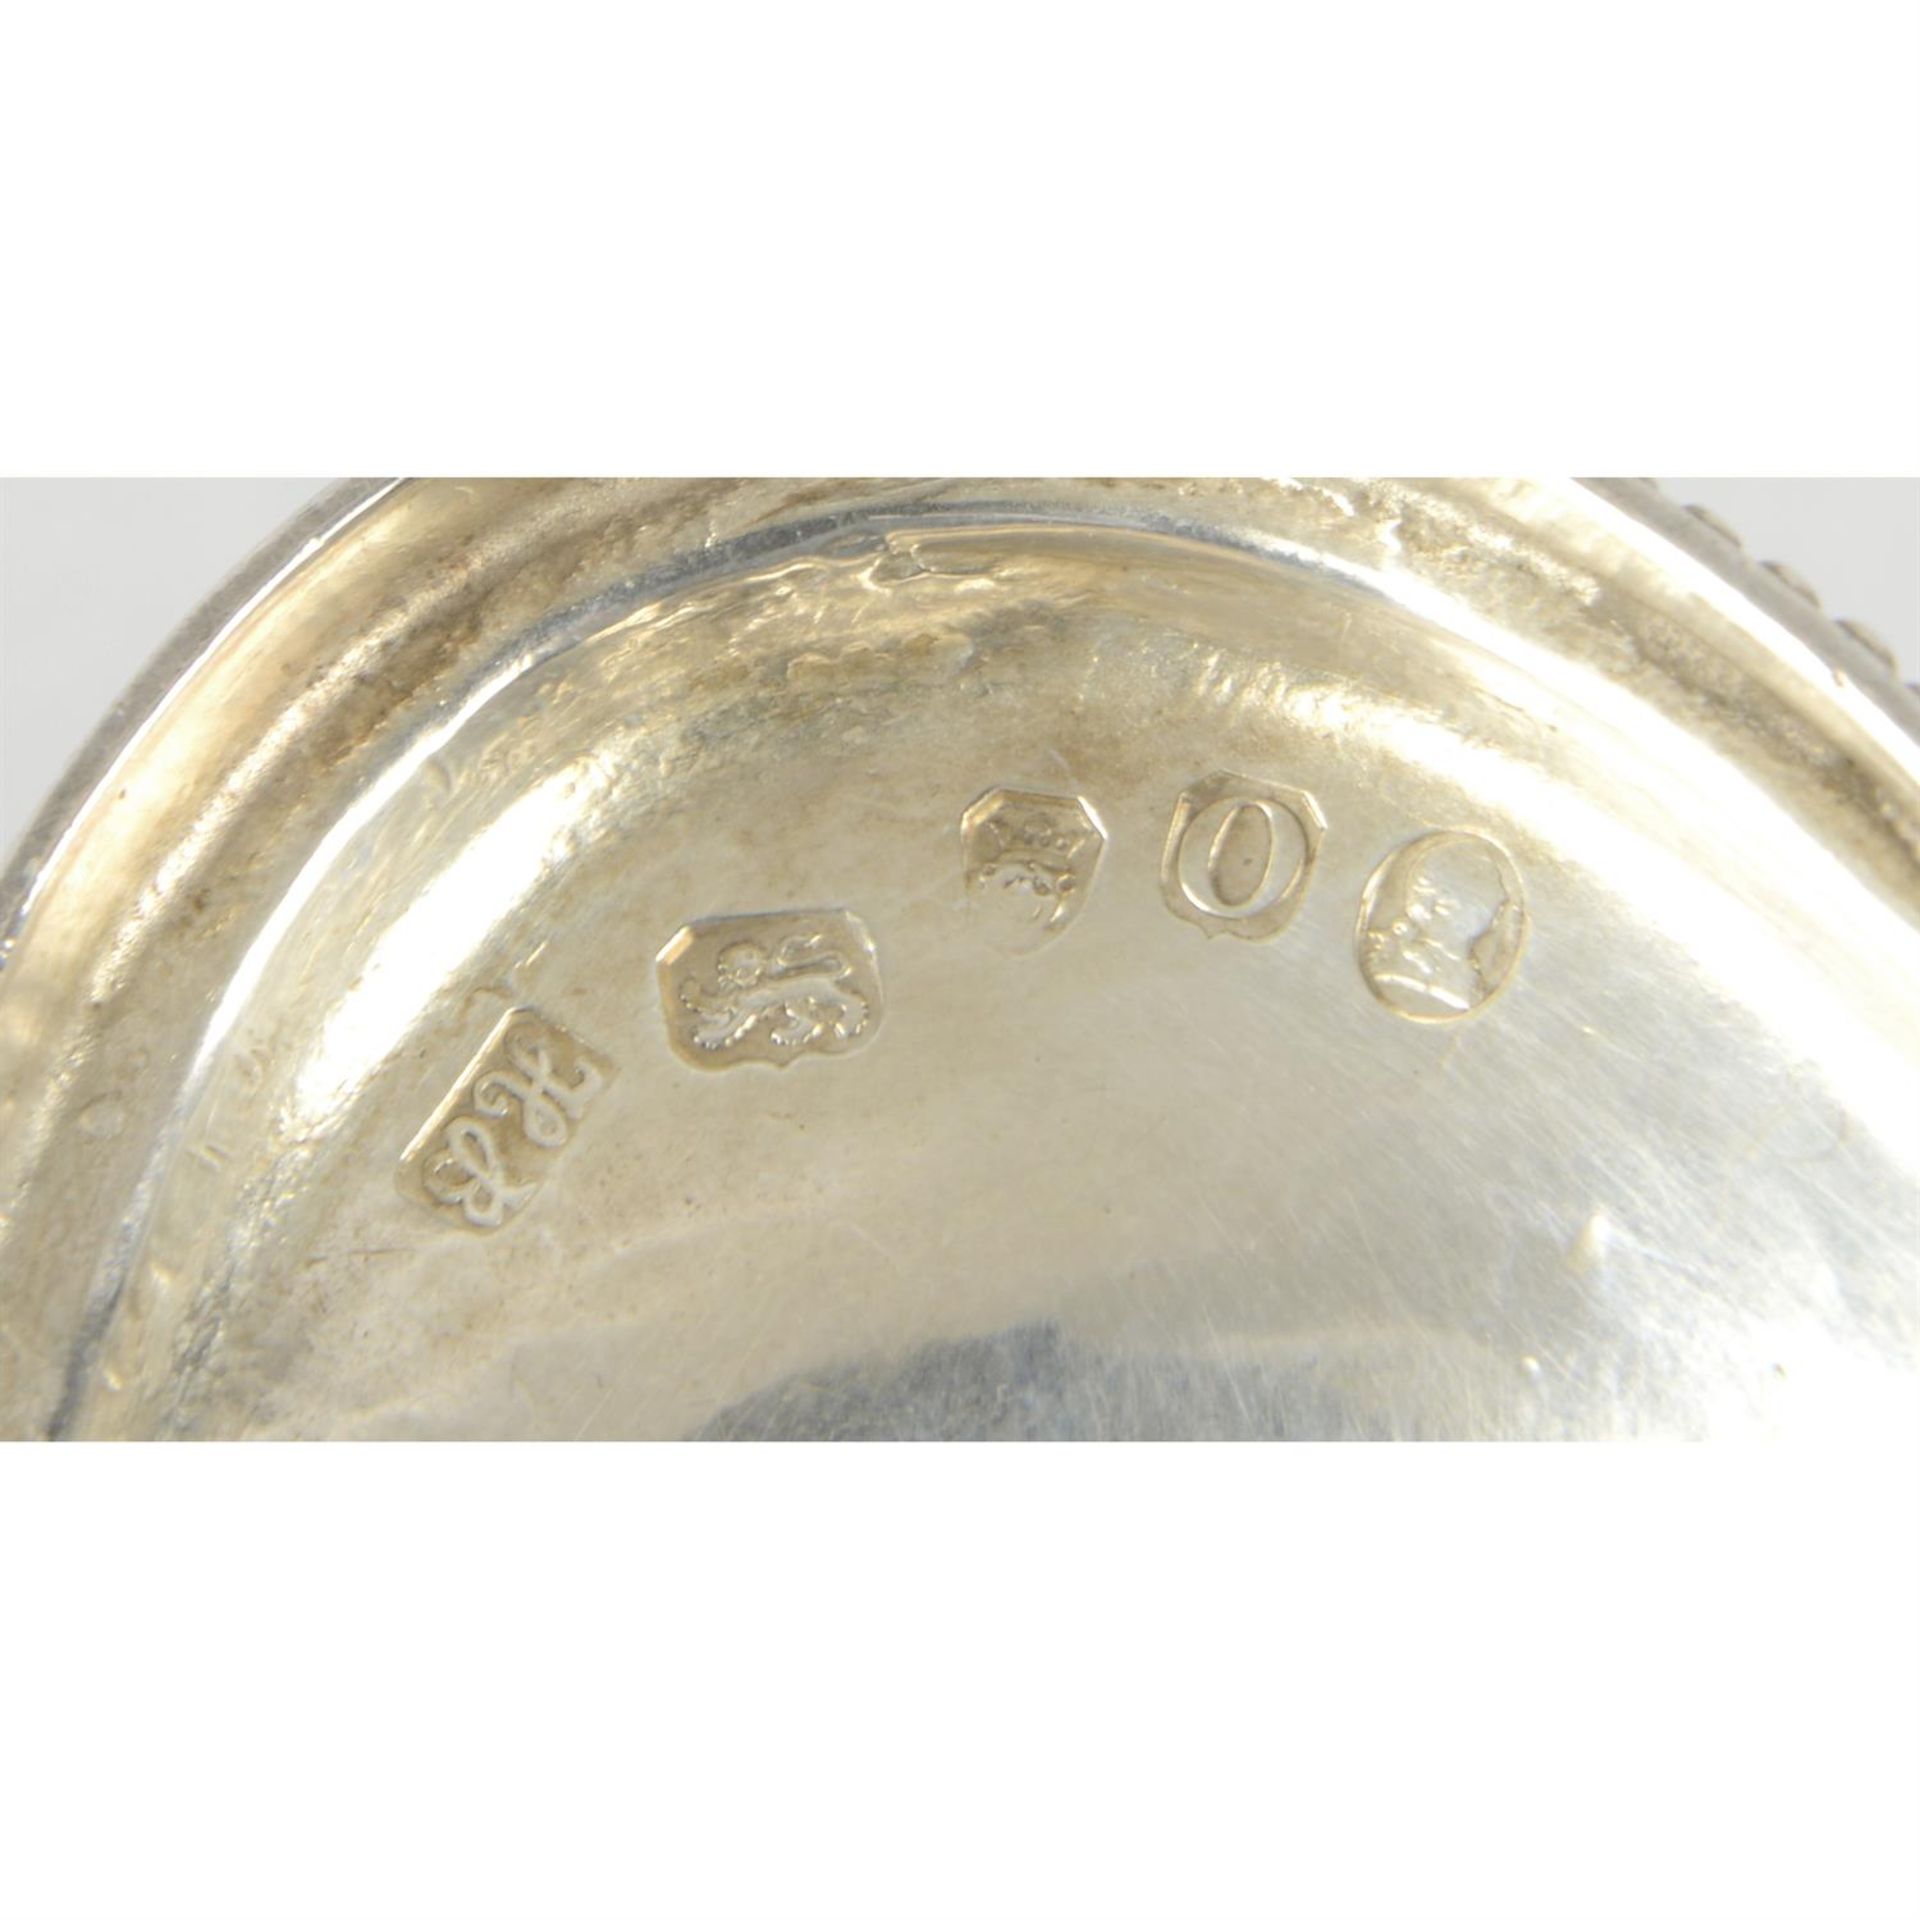 George III silver pedestal sugar basket by Hester Bateman. - Image 2 of 2